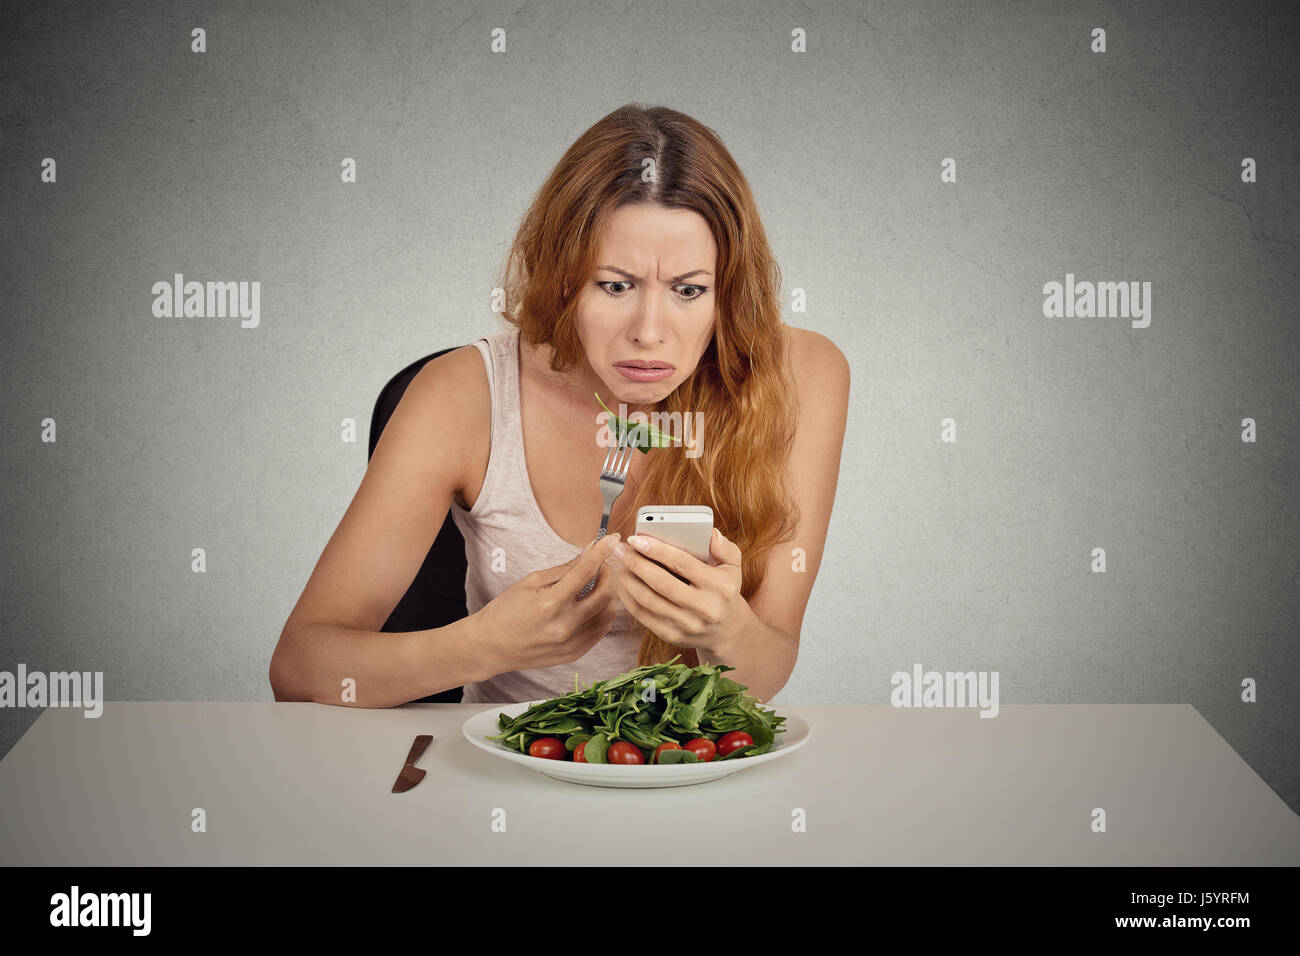 Ritratto ragazza giovane mangiare insalata verde guardando phone vedendo le cattive notizie o foto infastiditi confuso deluso faccia espressione isolato sul muro grigio Foto Stock